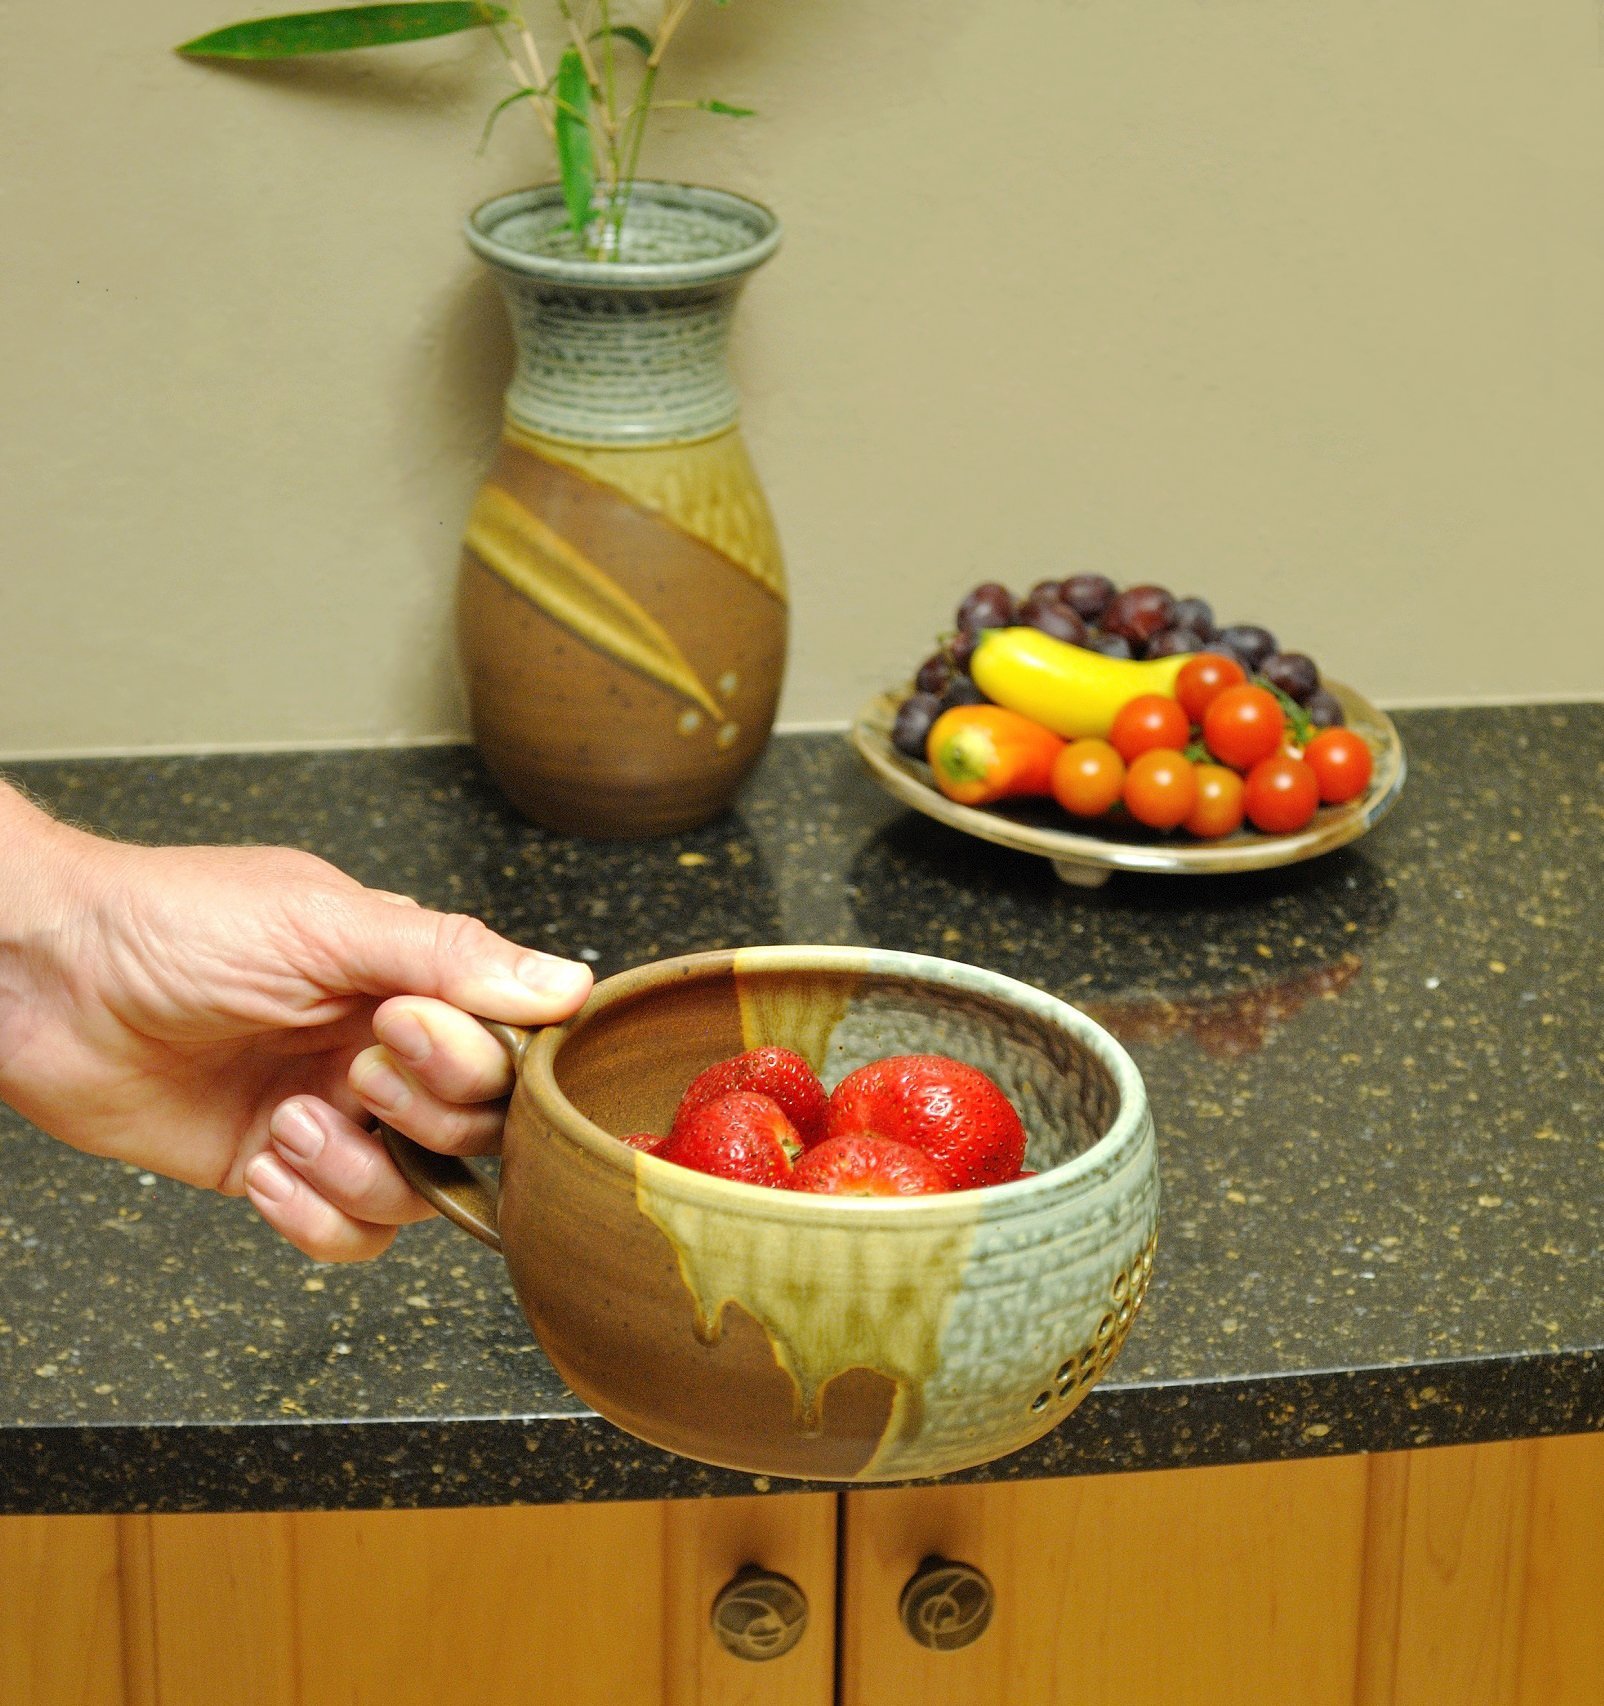 GW Pottery Handmade Stoneware Berry Bowl/Colander, Blue